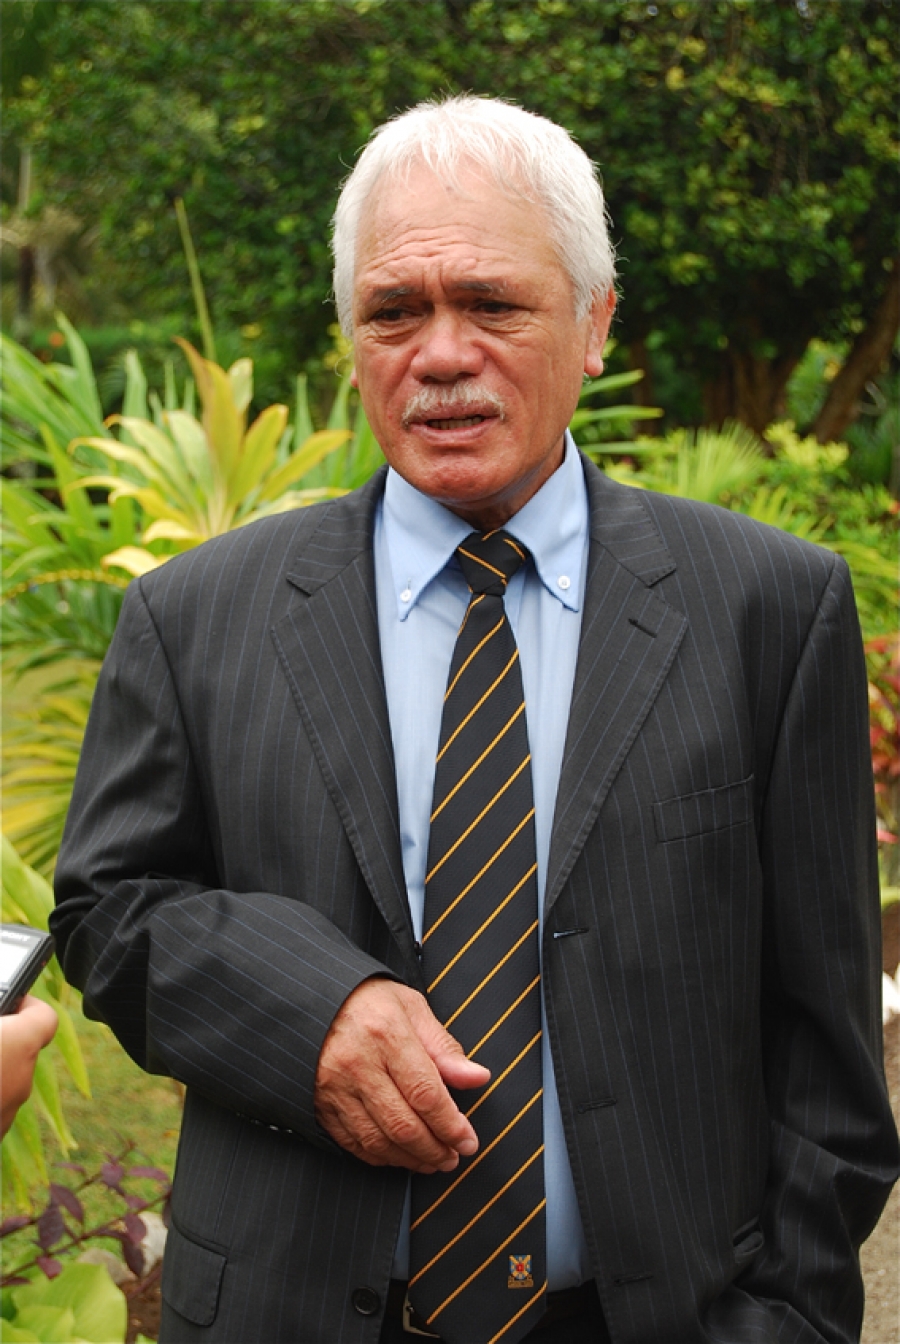 Former PM Jim Marurai passes away at age 73